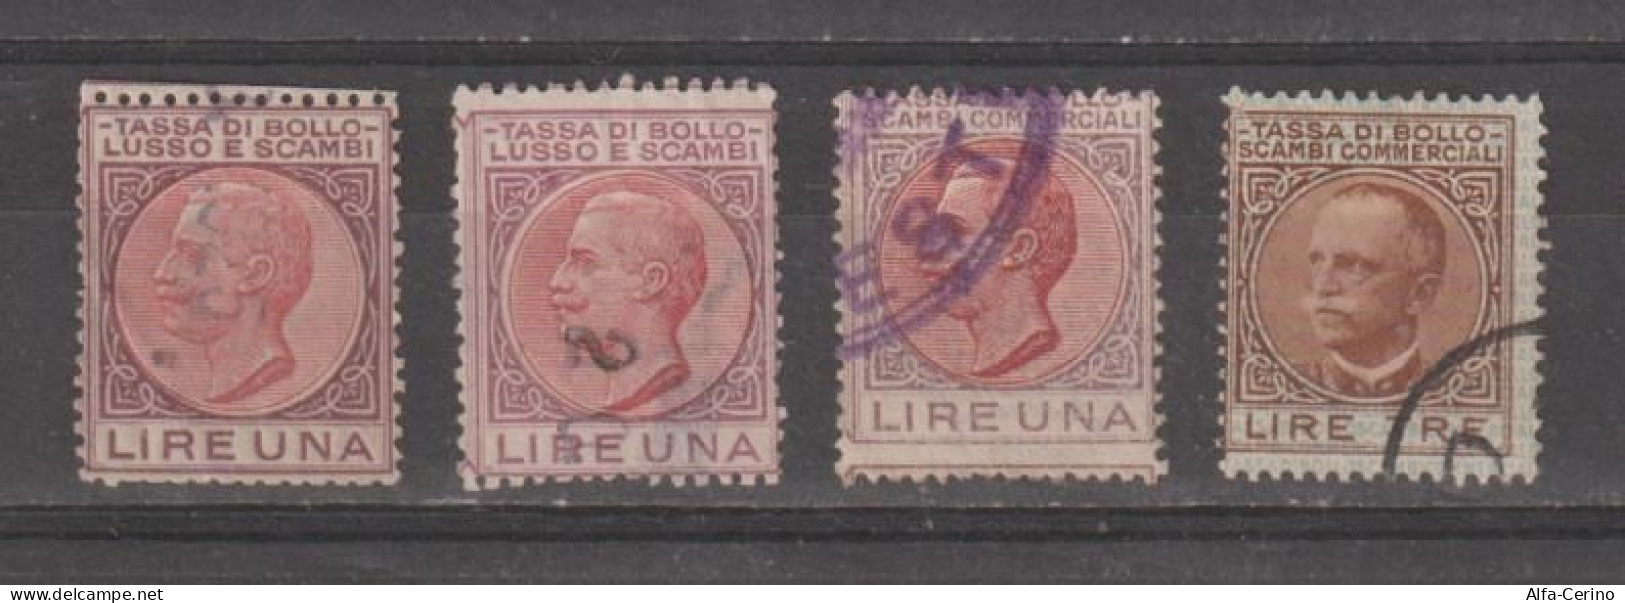 REGNO:  1900/44  VITTORIO  EMAN. III°  -  TASSA  DI  BOLLO - LUSSO  E  SCAMBI  -  4  VAL. US. - Revenue Stamps